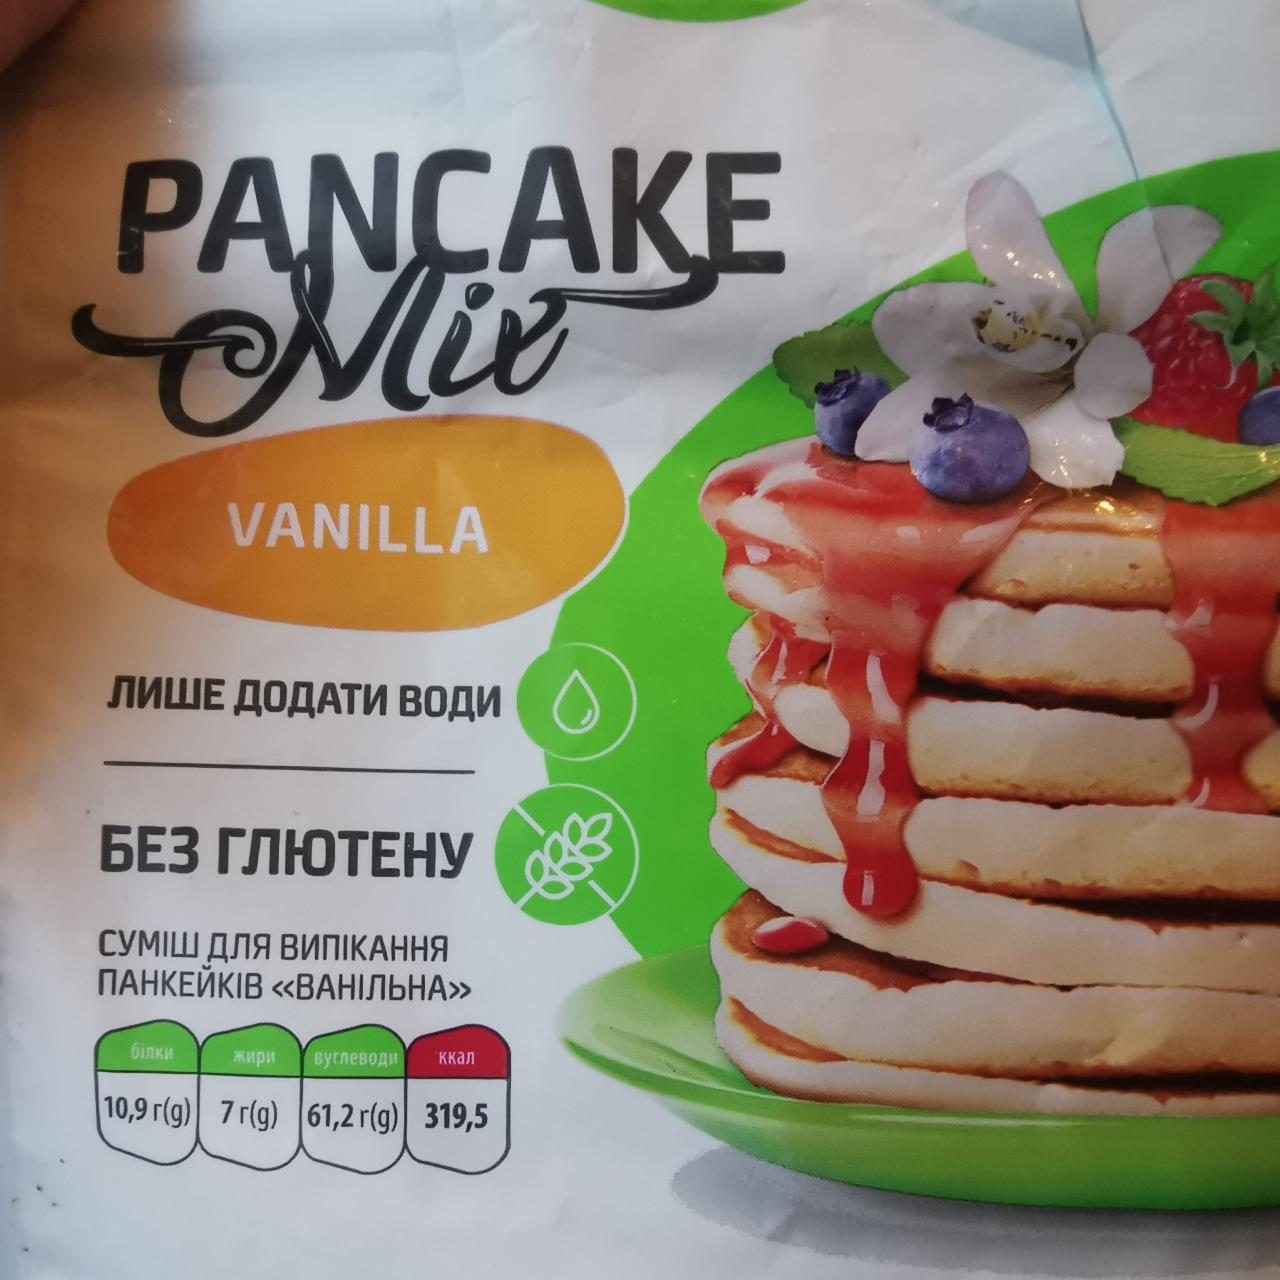 Фото - Суміш для випікання панкейків Ванільна Vanilla Pancake Mix Stevia